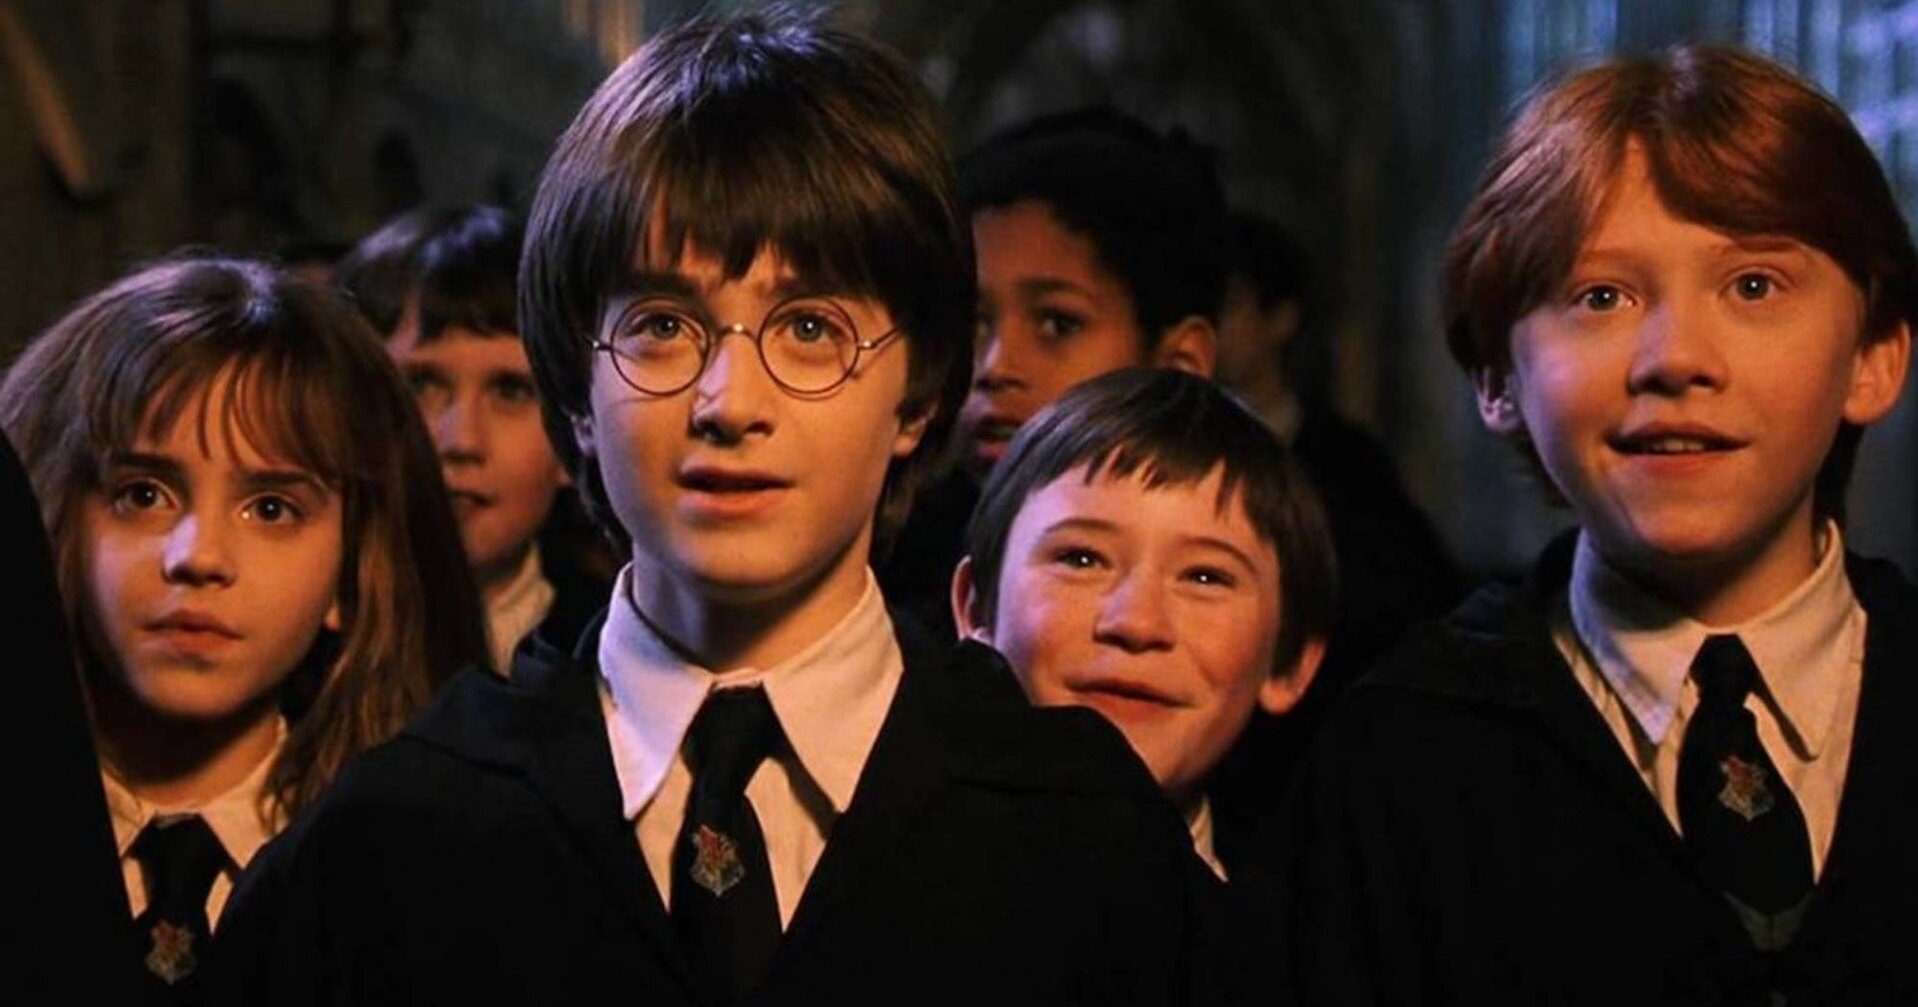 Музыка из серии фильмов о Гарри Поттере - || фото: фильм "Гарри Поттер и Философский камень"